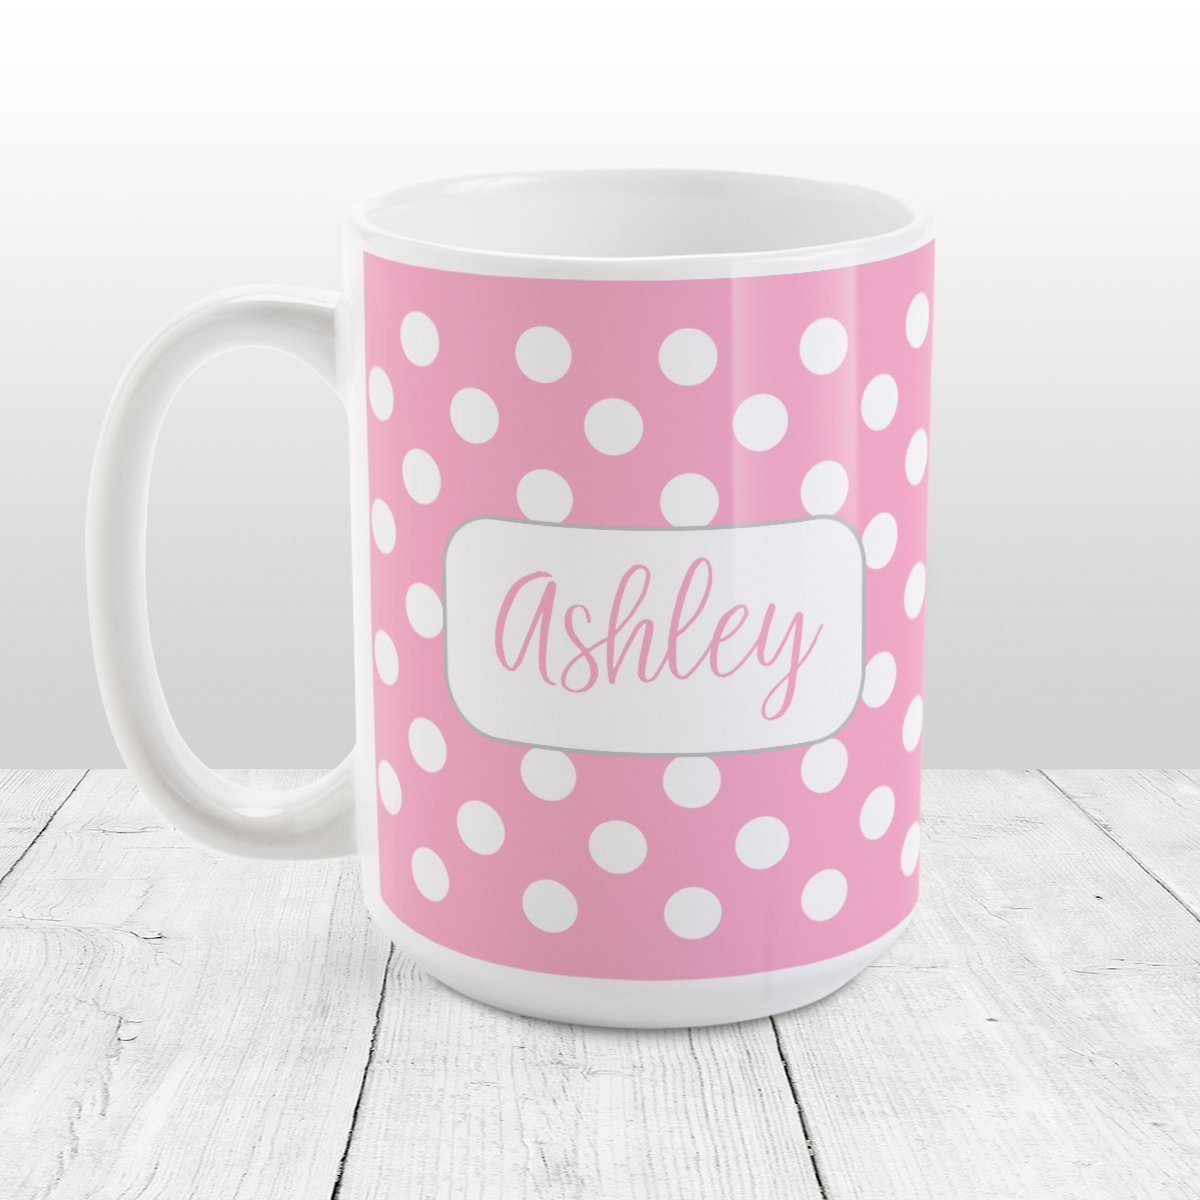 Personalized Pink Polka Dot Mug at Amy's Coffee Mugs